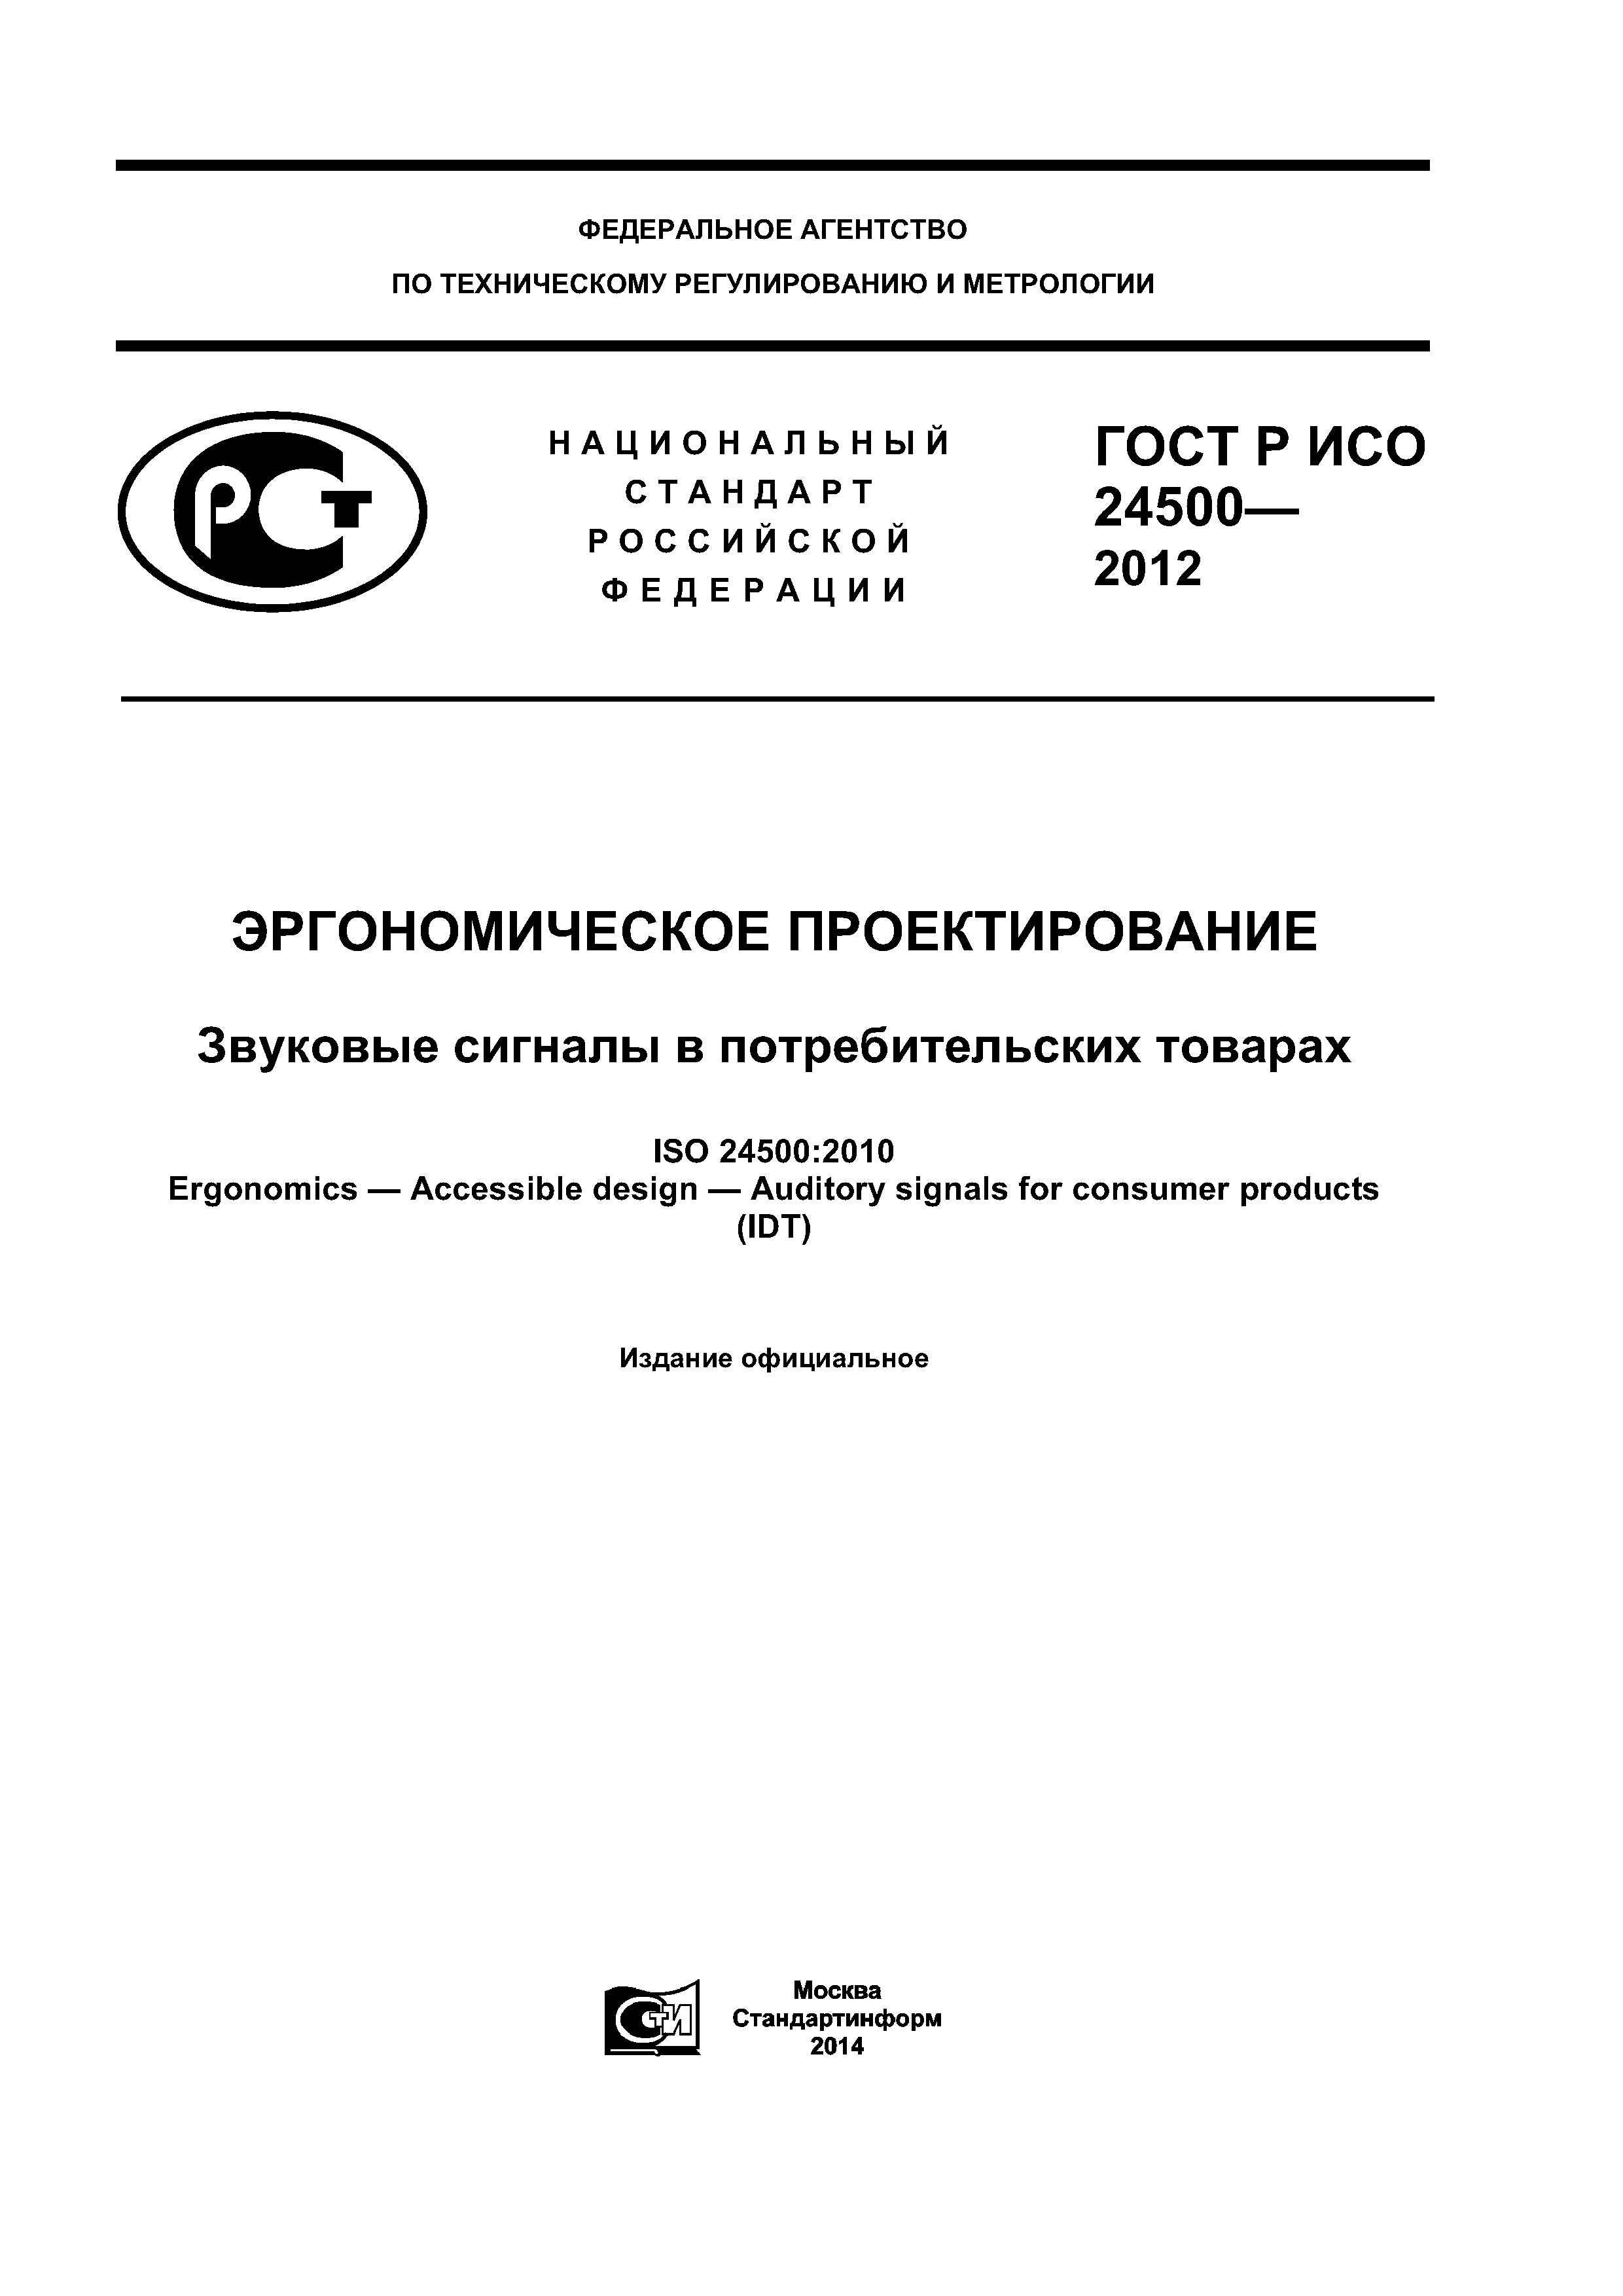 ГОСТ Р ИСО 24500-2012